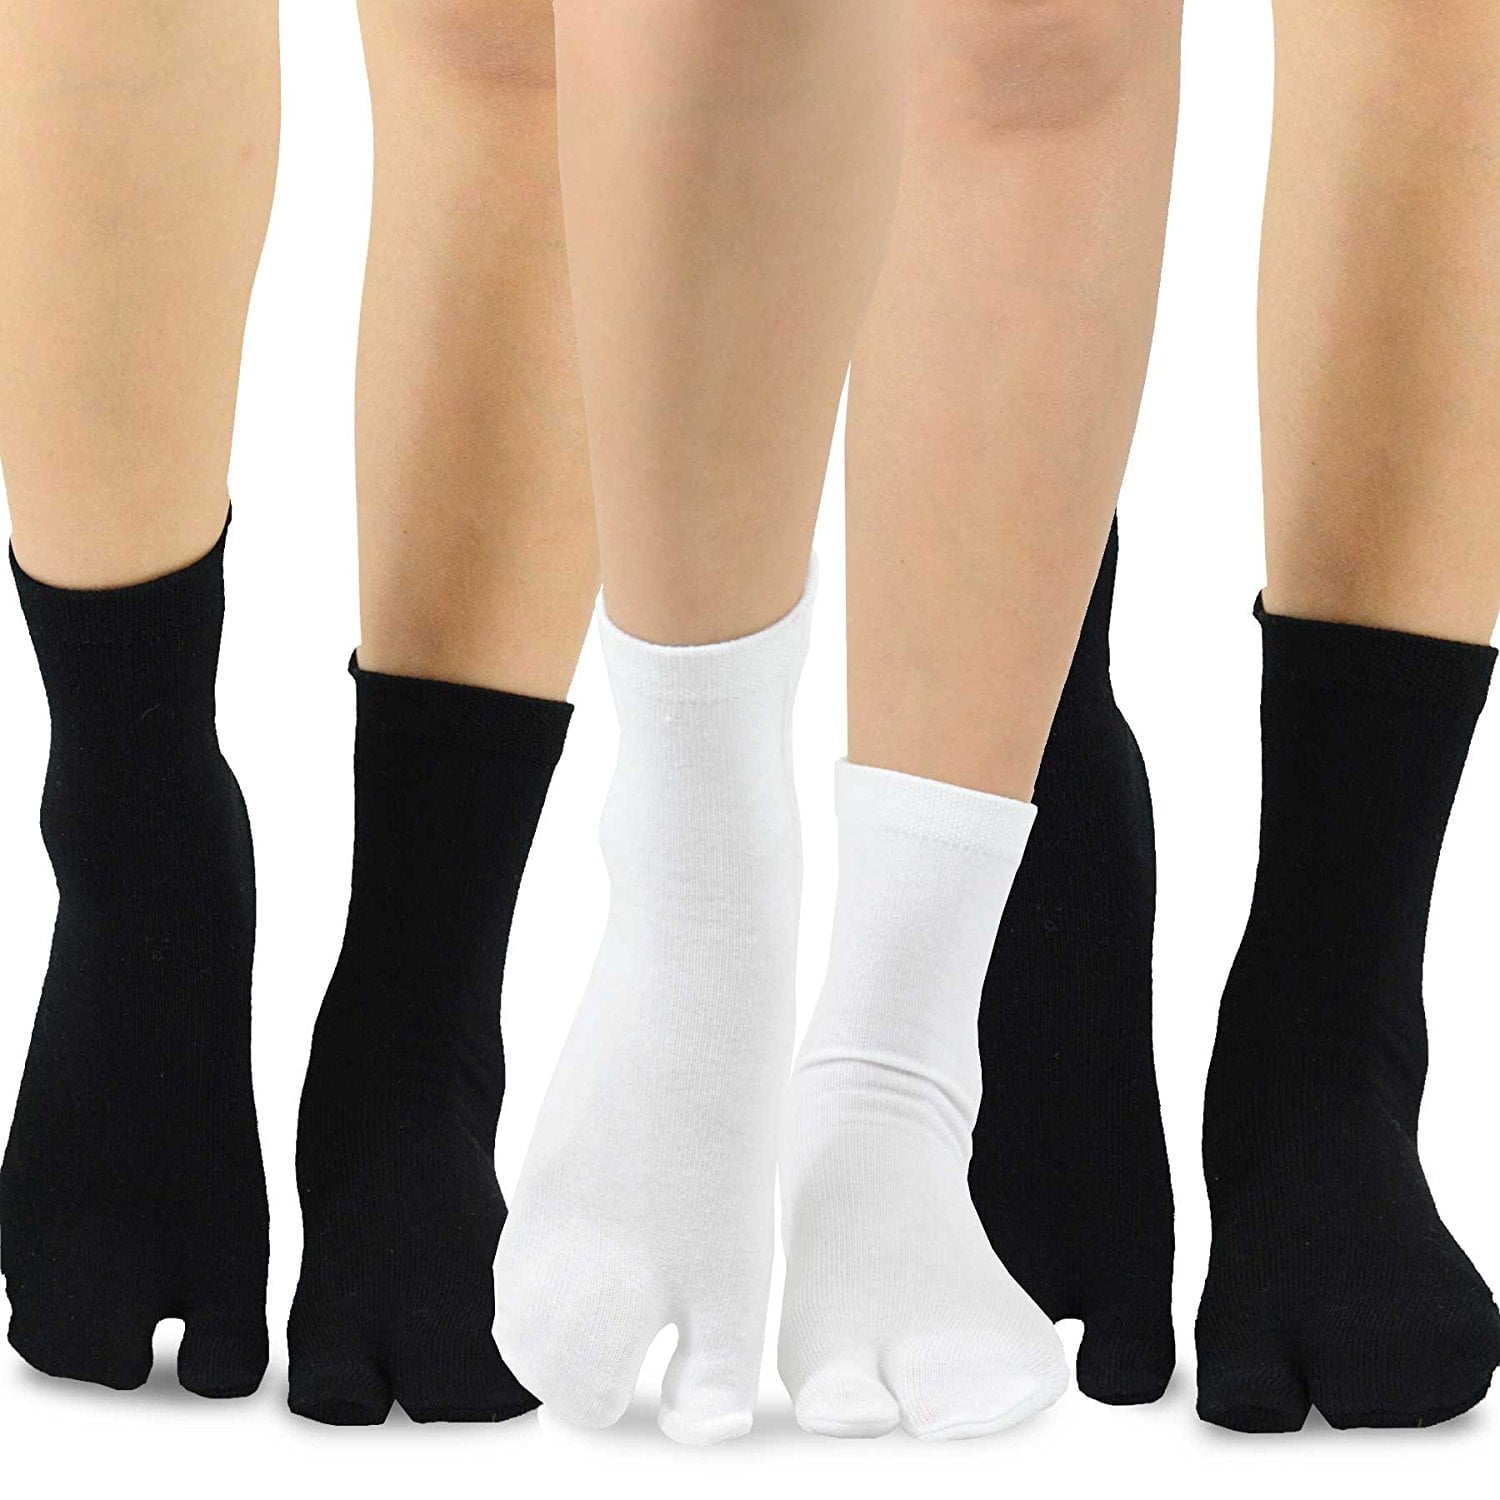 TeeHee Flip Flop Big Toe Cotton Socks 